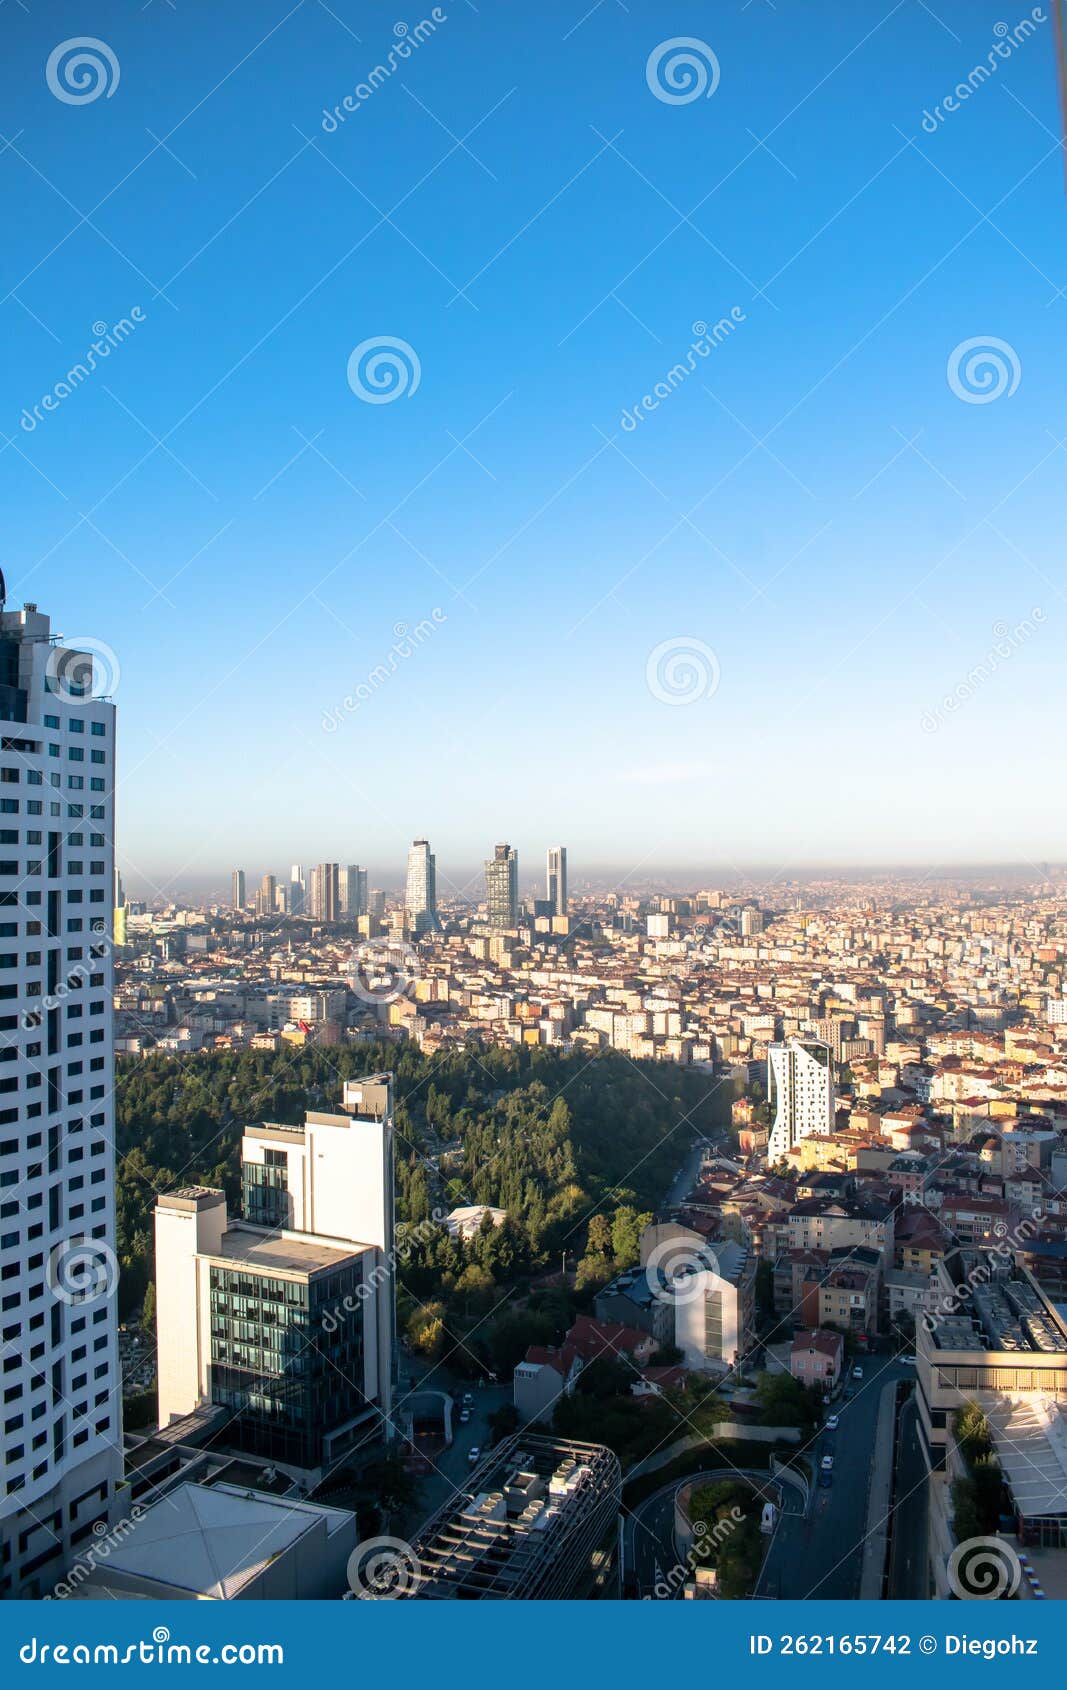 istanbul panorama besiktas turkye visit instanbul